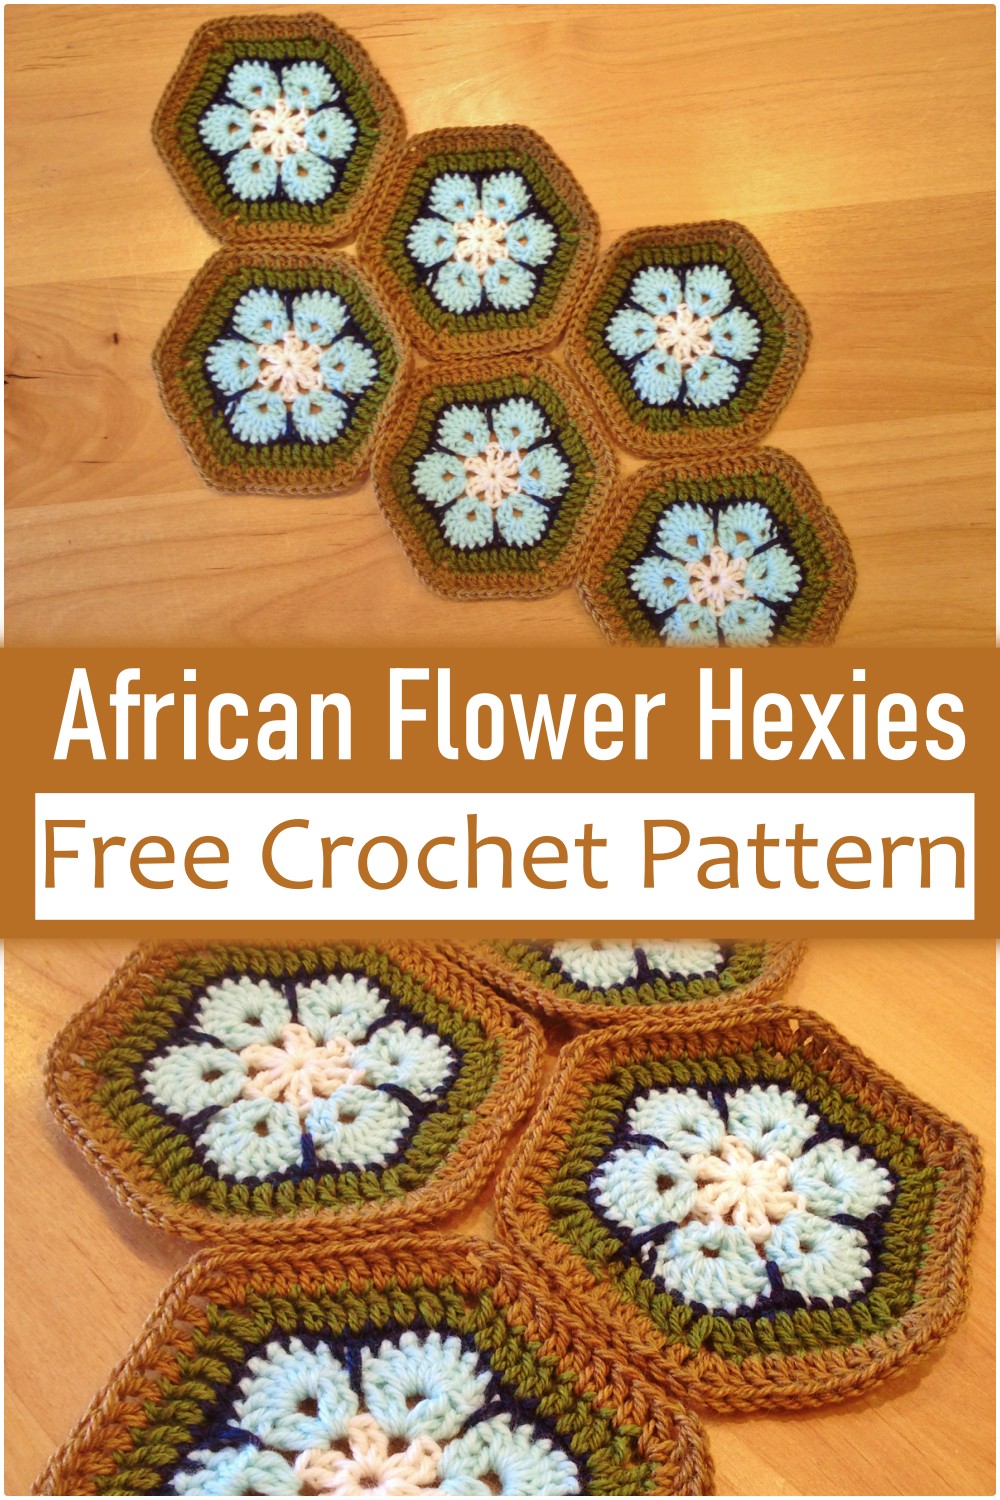 African Flower Hexies